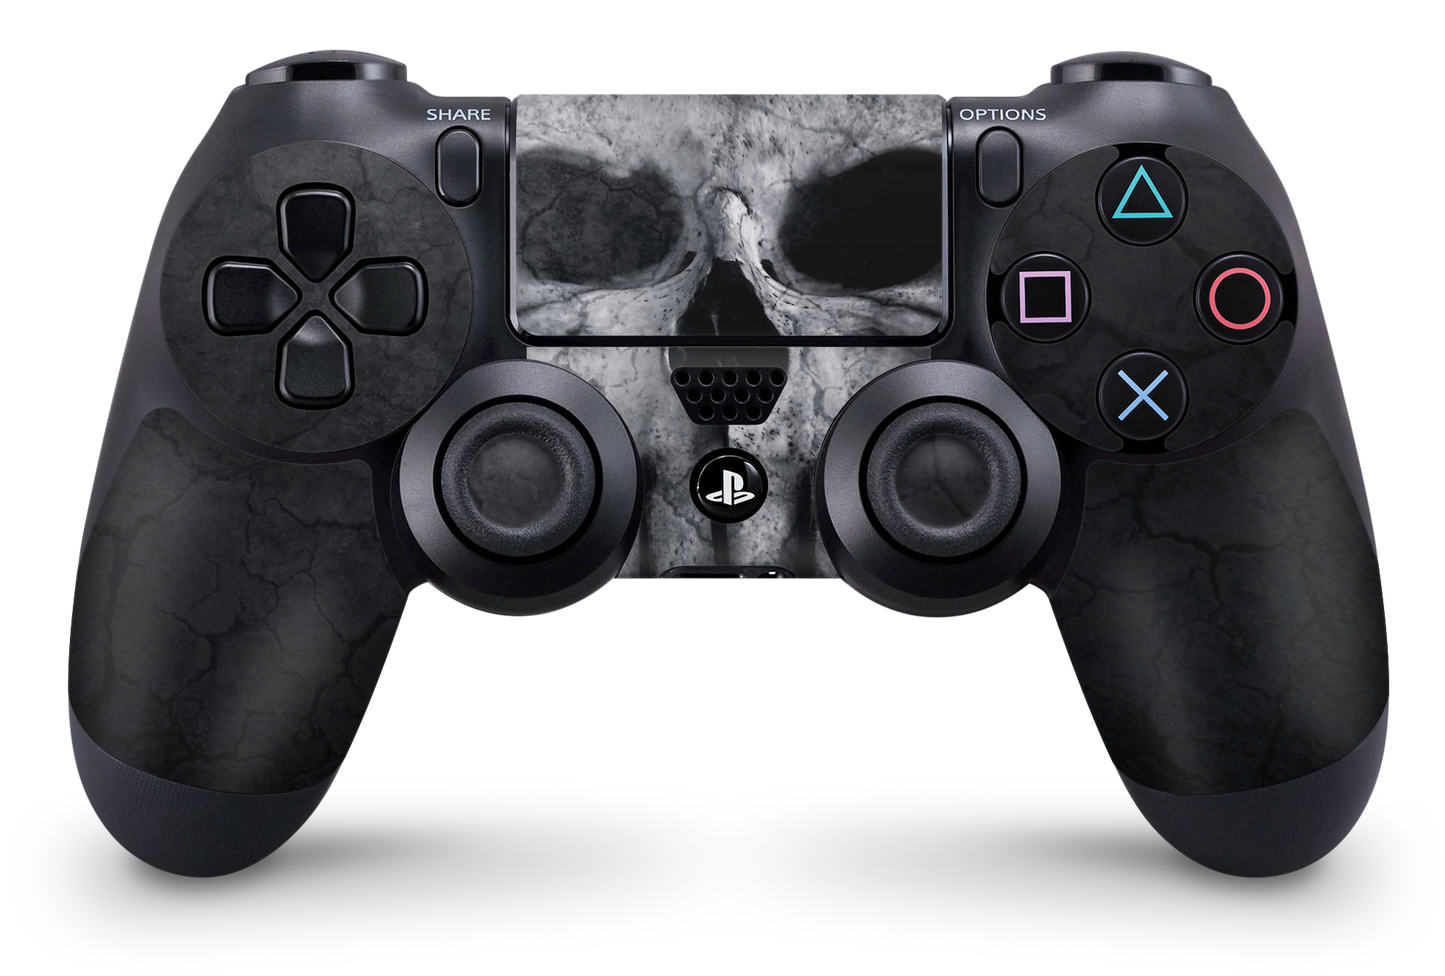 PS4 Playstation 4 Controller Skins - Vinyl Skin Aufkleber für Gaming Controller Hard Skull Aufkleber Skins4u   